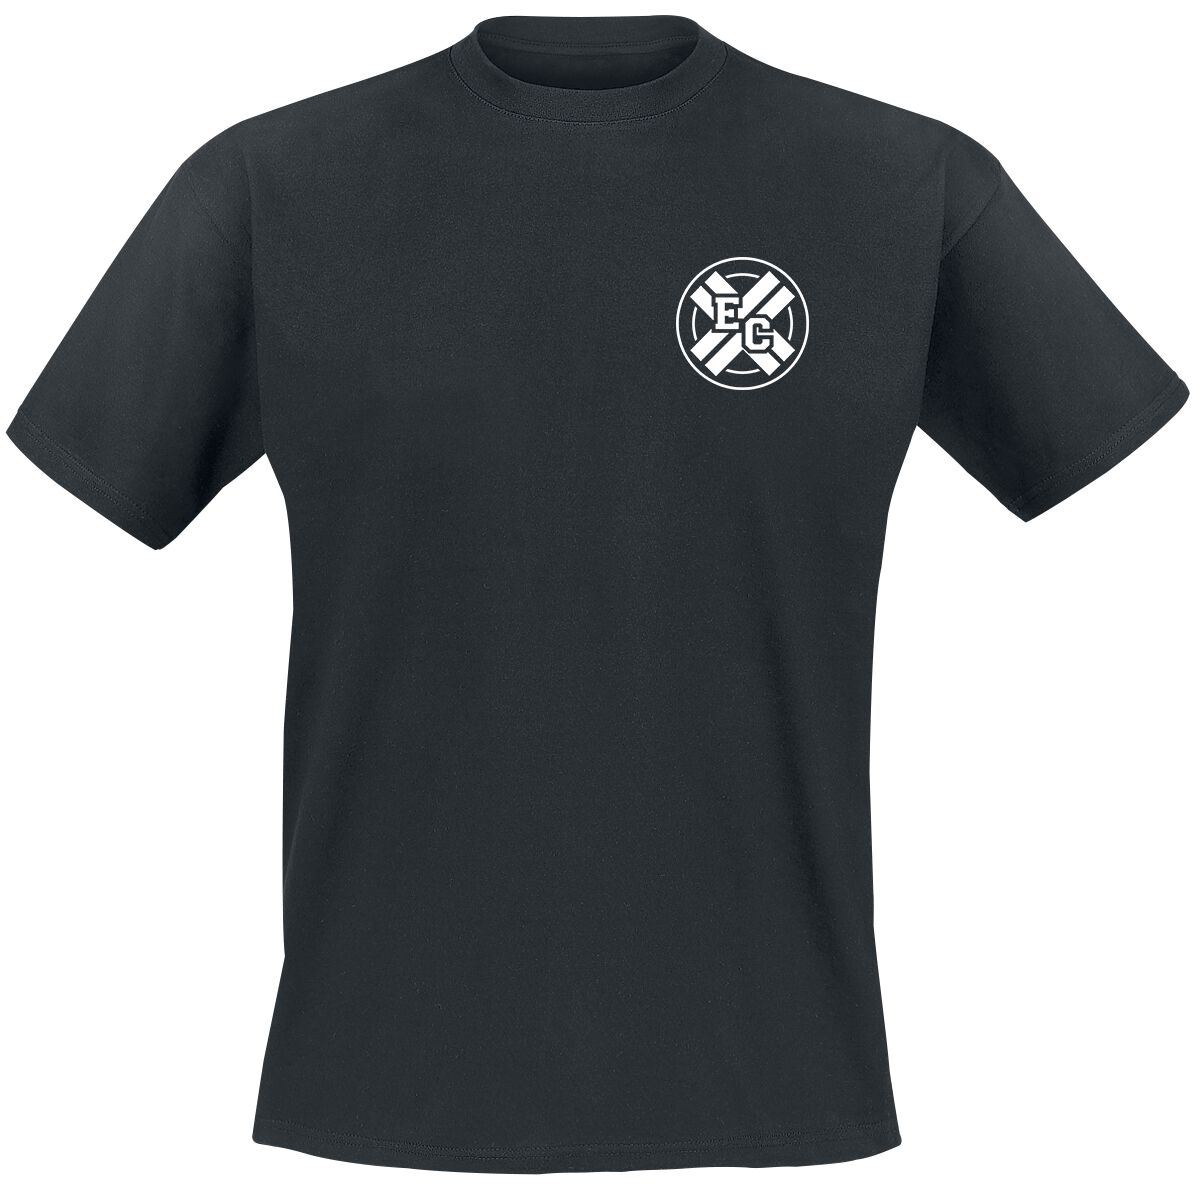 Electric Callboy T-Shirt - Pump It Better - S bis 3XL - für Männer - Größe 3XL - schwarz  - Lizenziertes Merchandise!